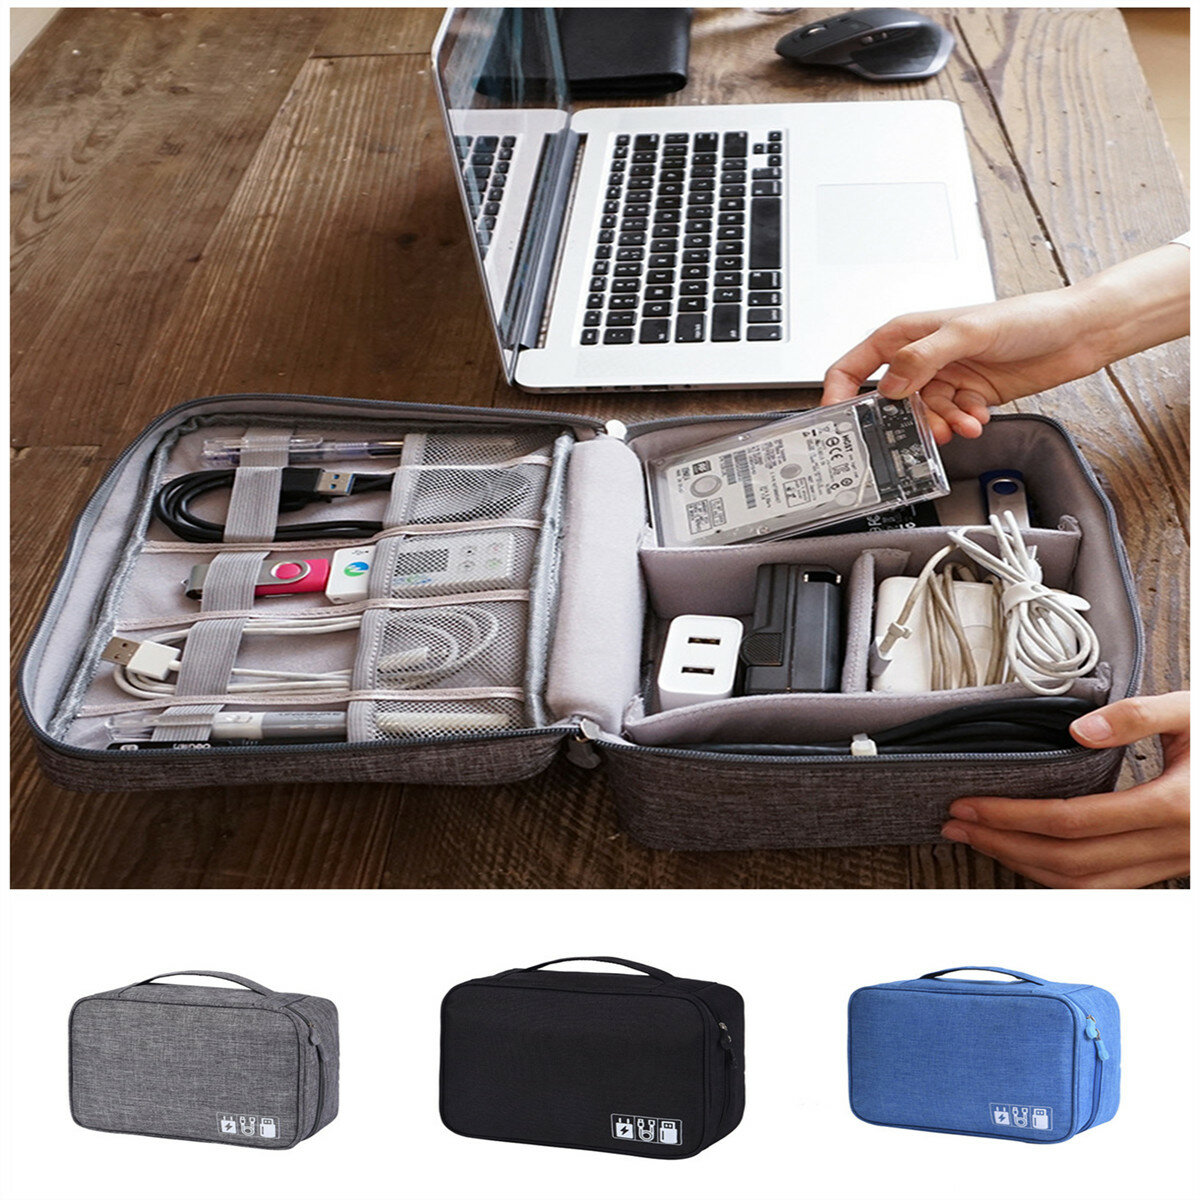 IPRee® Çok Fonksiyonlu Dijital Depolama Çanta Kablo Çanta USB Kablo Şarj Cihazı Telefon Kulaklığı Düzenleyici Outdoor Travel